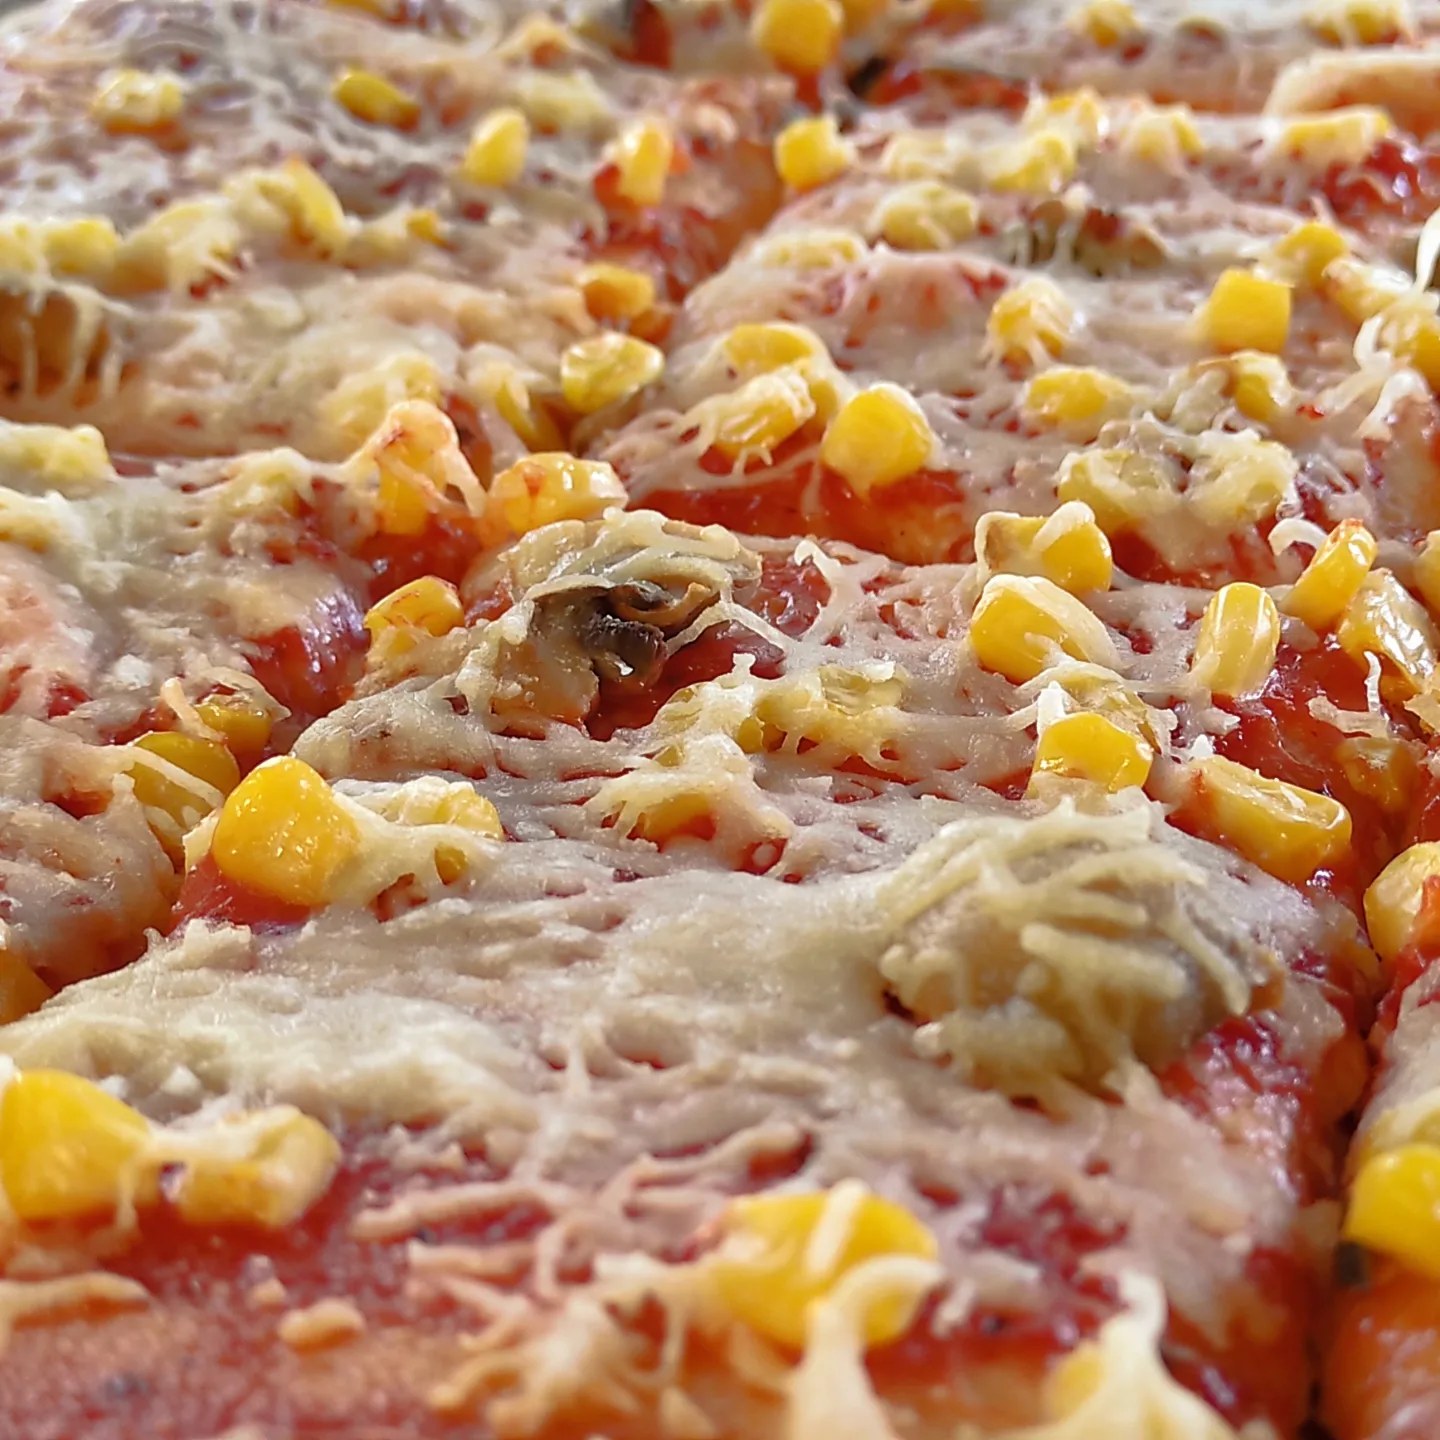 Közeli kép egy pizzáról, tetején olvasztott sajttal, csemegekukoricával, gombával és paradicsomszósszal. A pizzát négyzet alakú darabokra vágják, a feltéteket egyenletesen elosztva a felületen, így részletes képet adnak az összetevőkről.